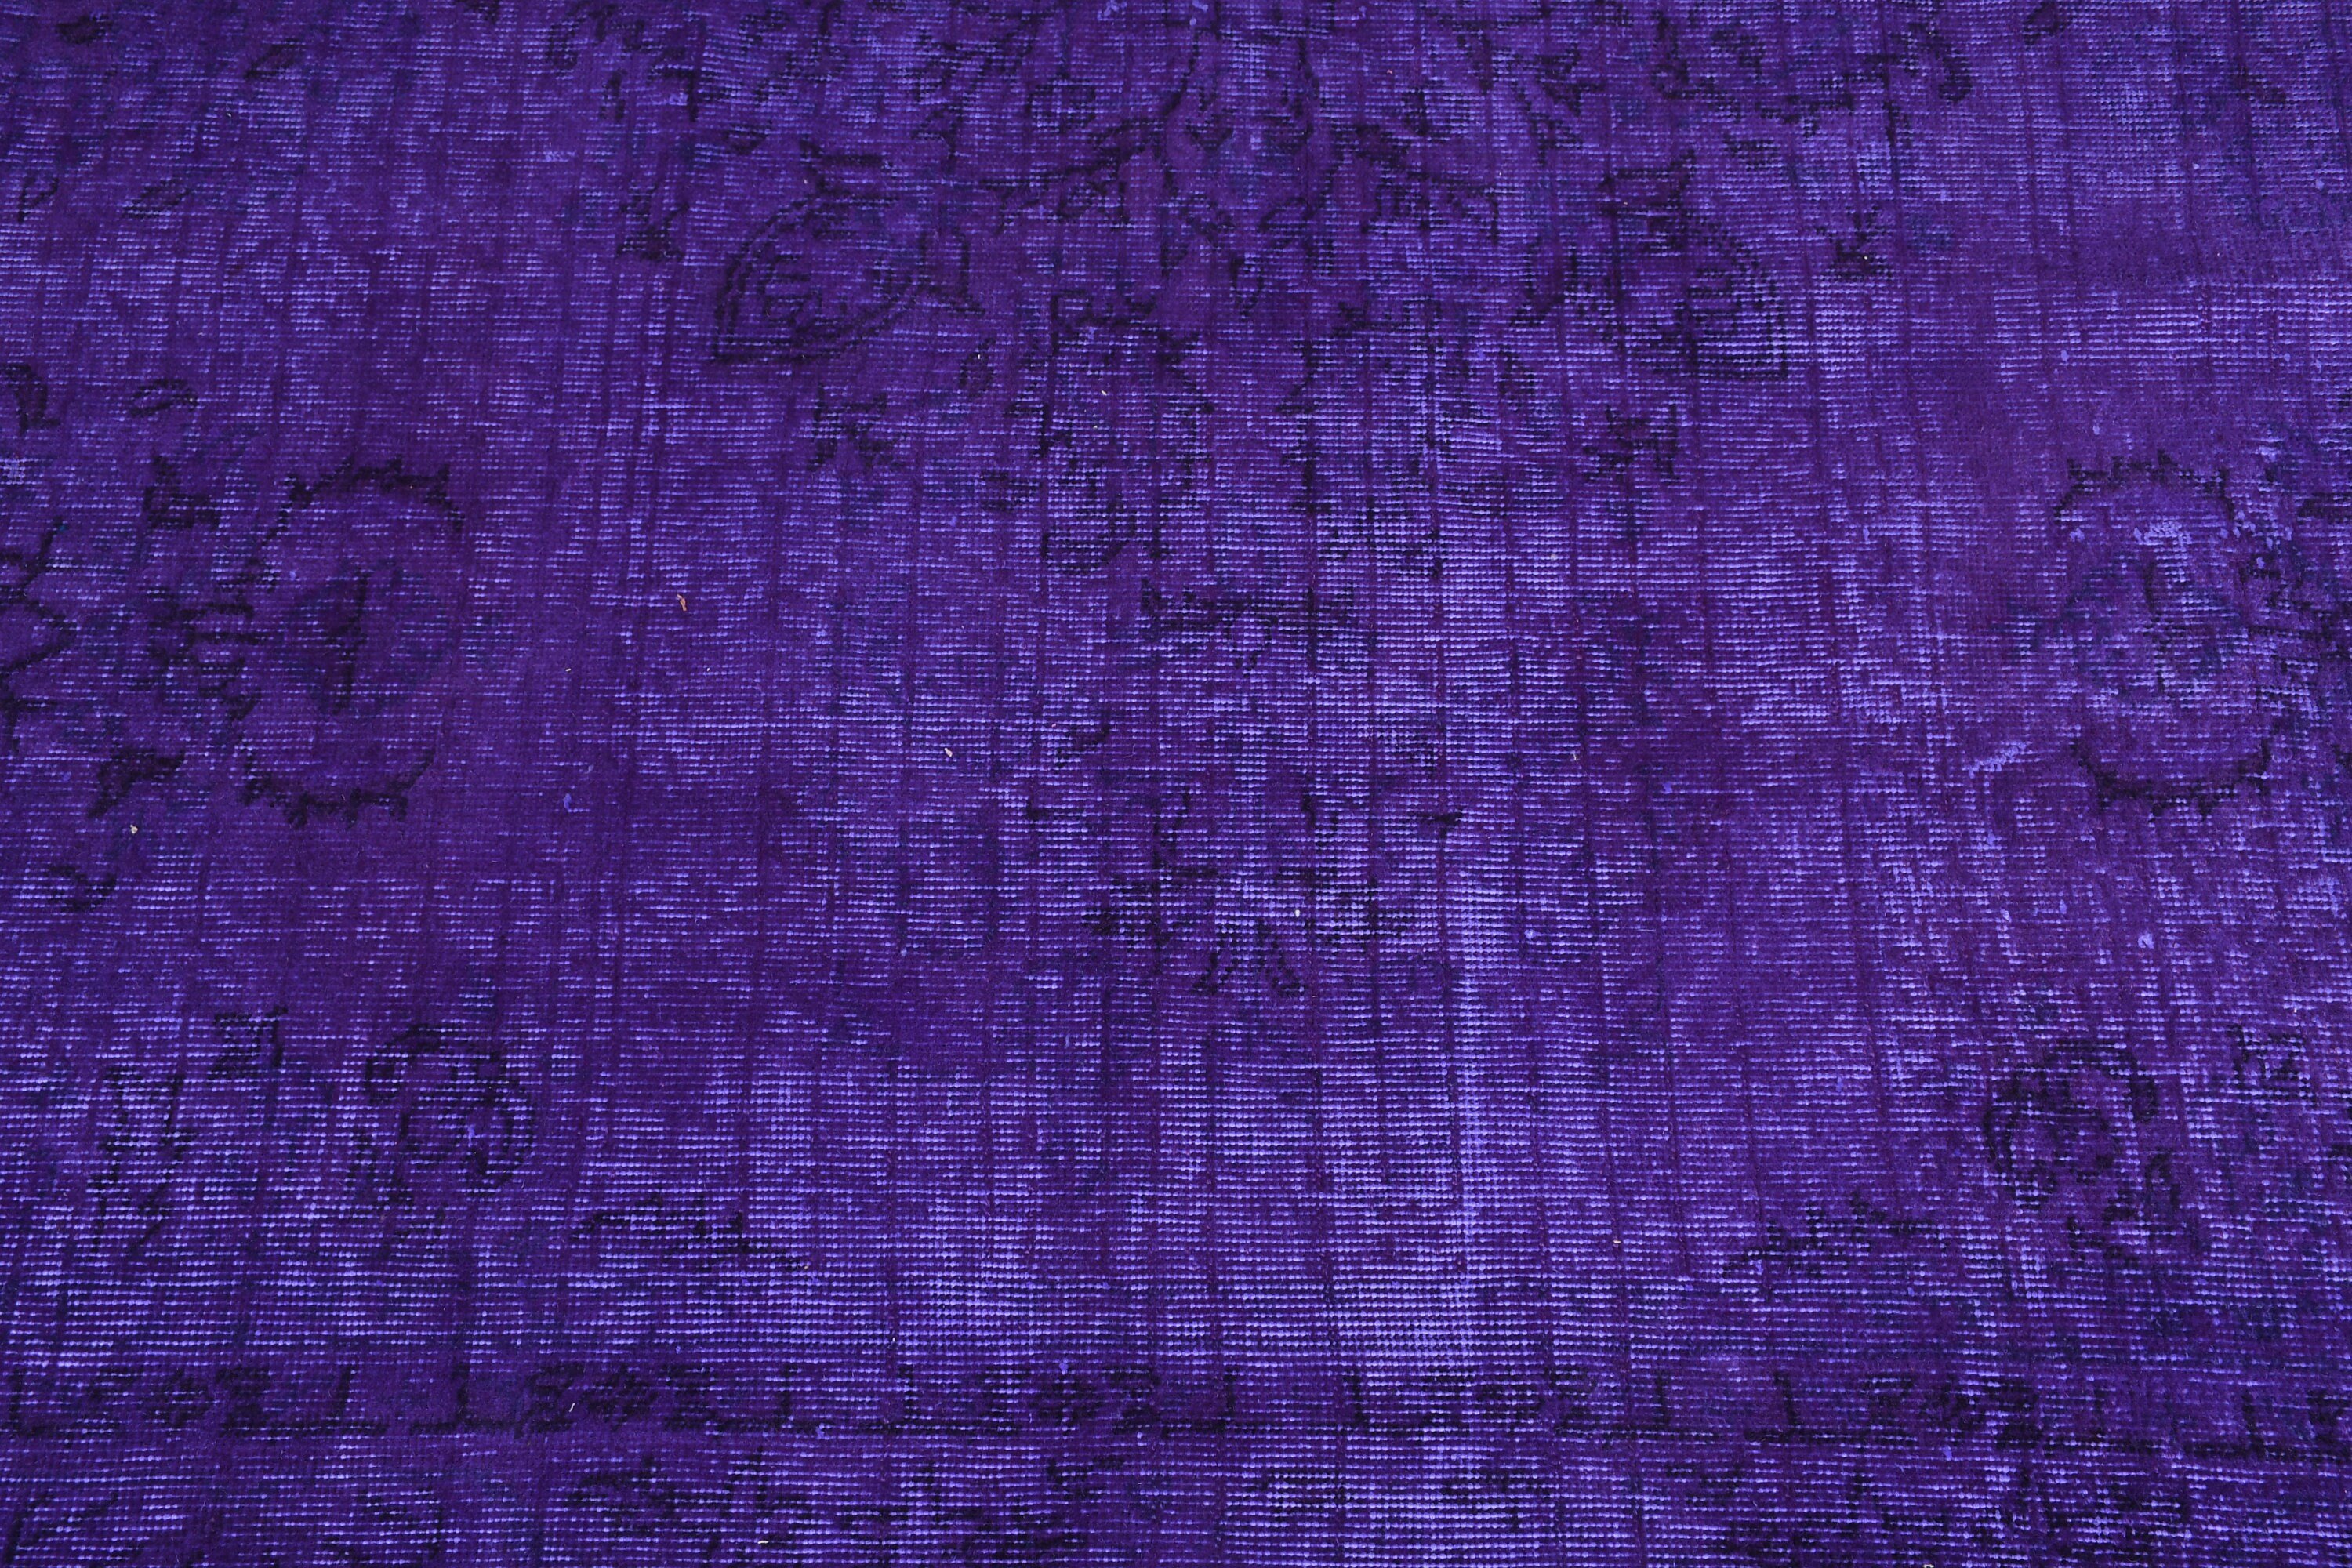 3x8.2 ft Runner Rug, Turkish Rugs, Vintage Rug, Stair Rugs, Wool Rugs, Oriental Rugs, Rugs for Runner, Purple Antique Rug, Corridor Rug